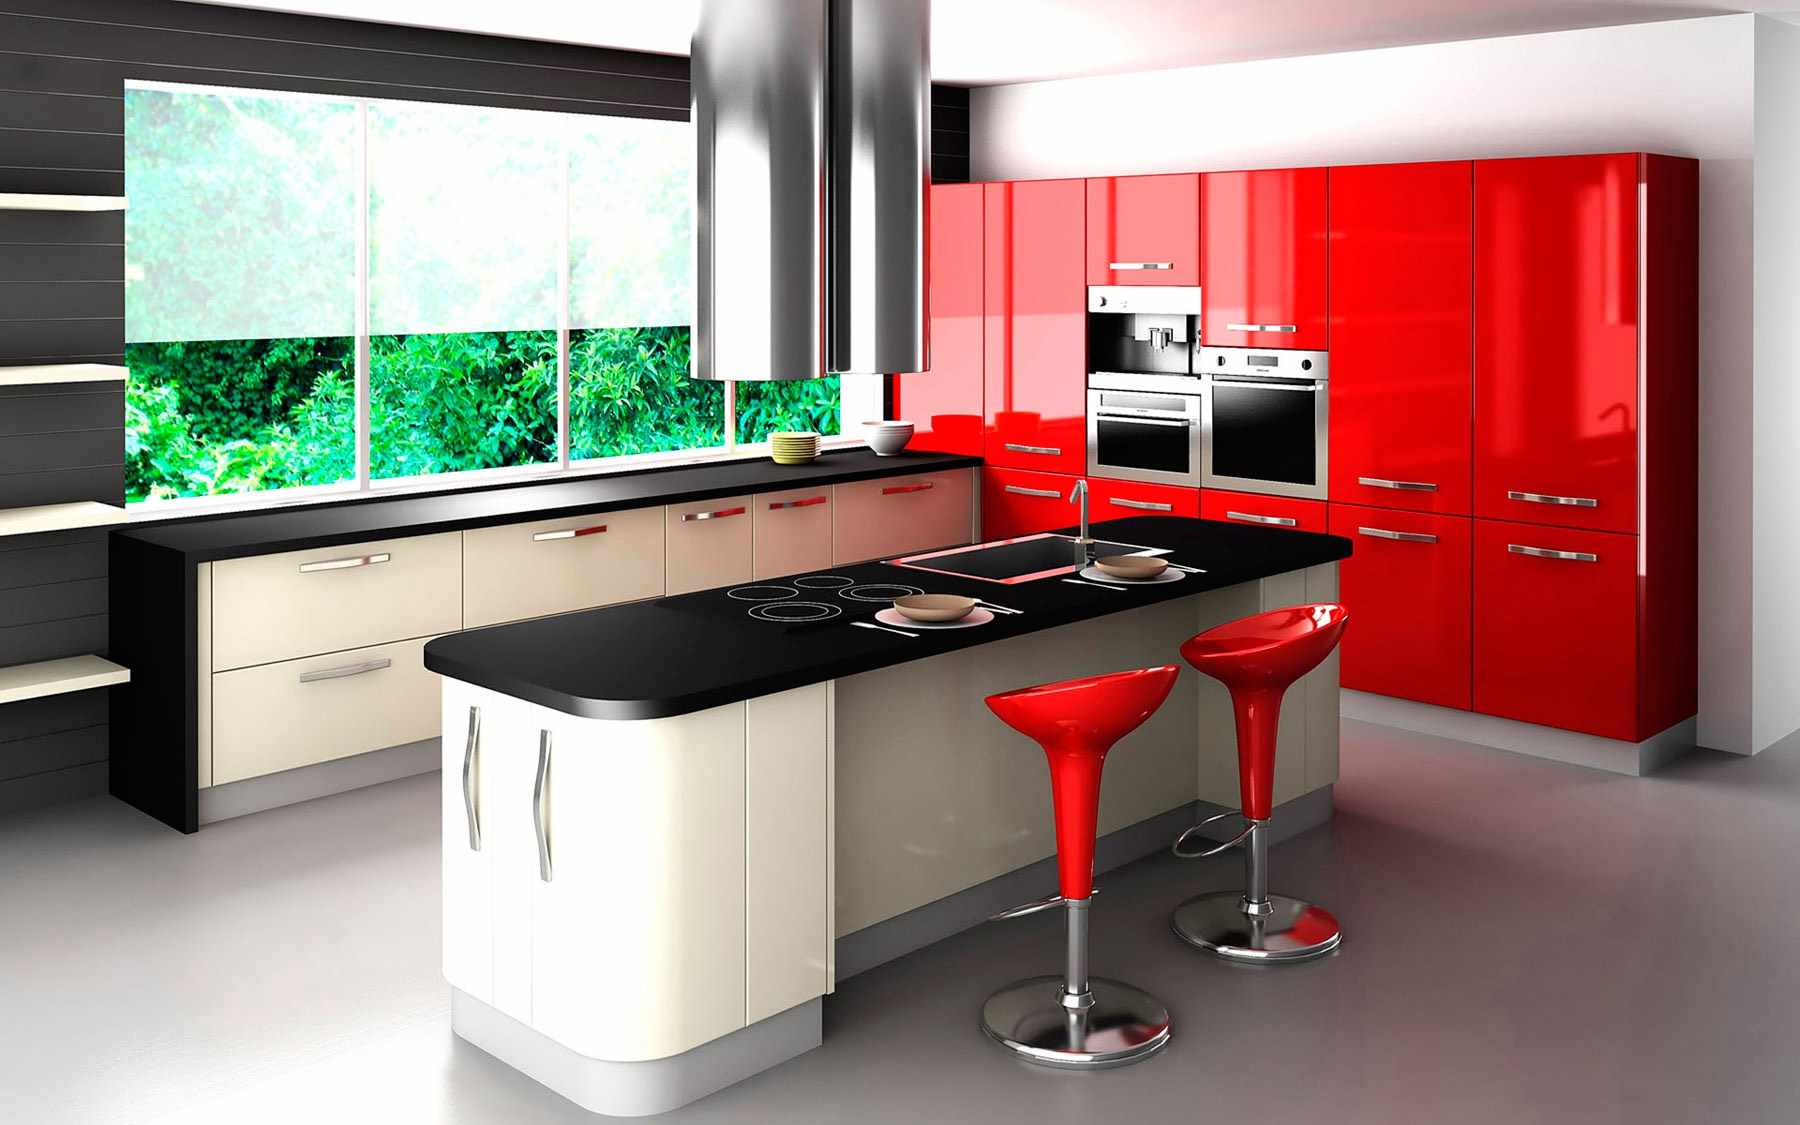 the idea of ​​a bright interior red kitchen